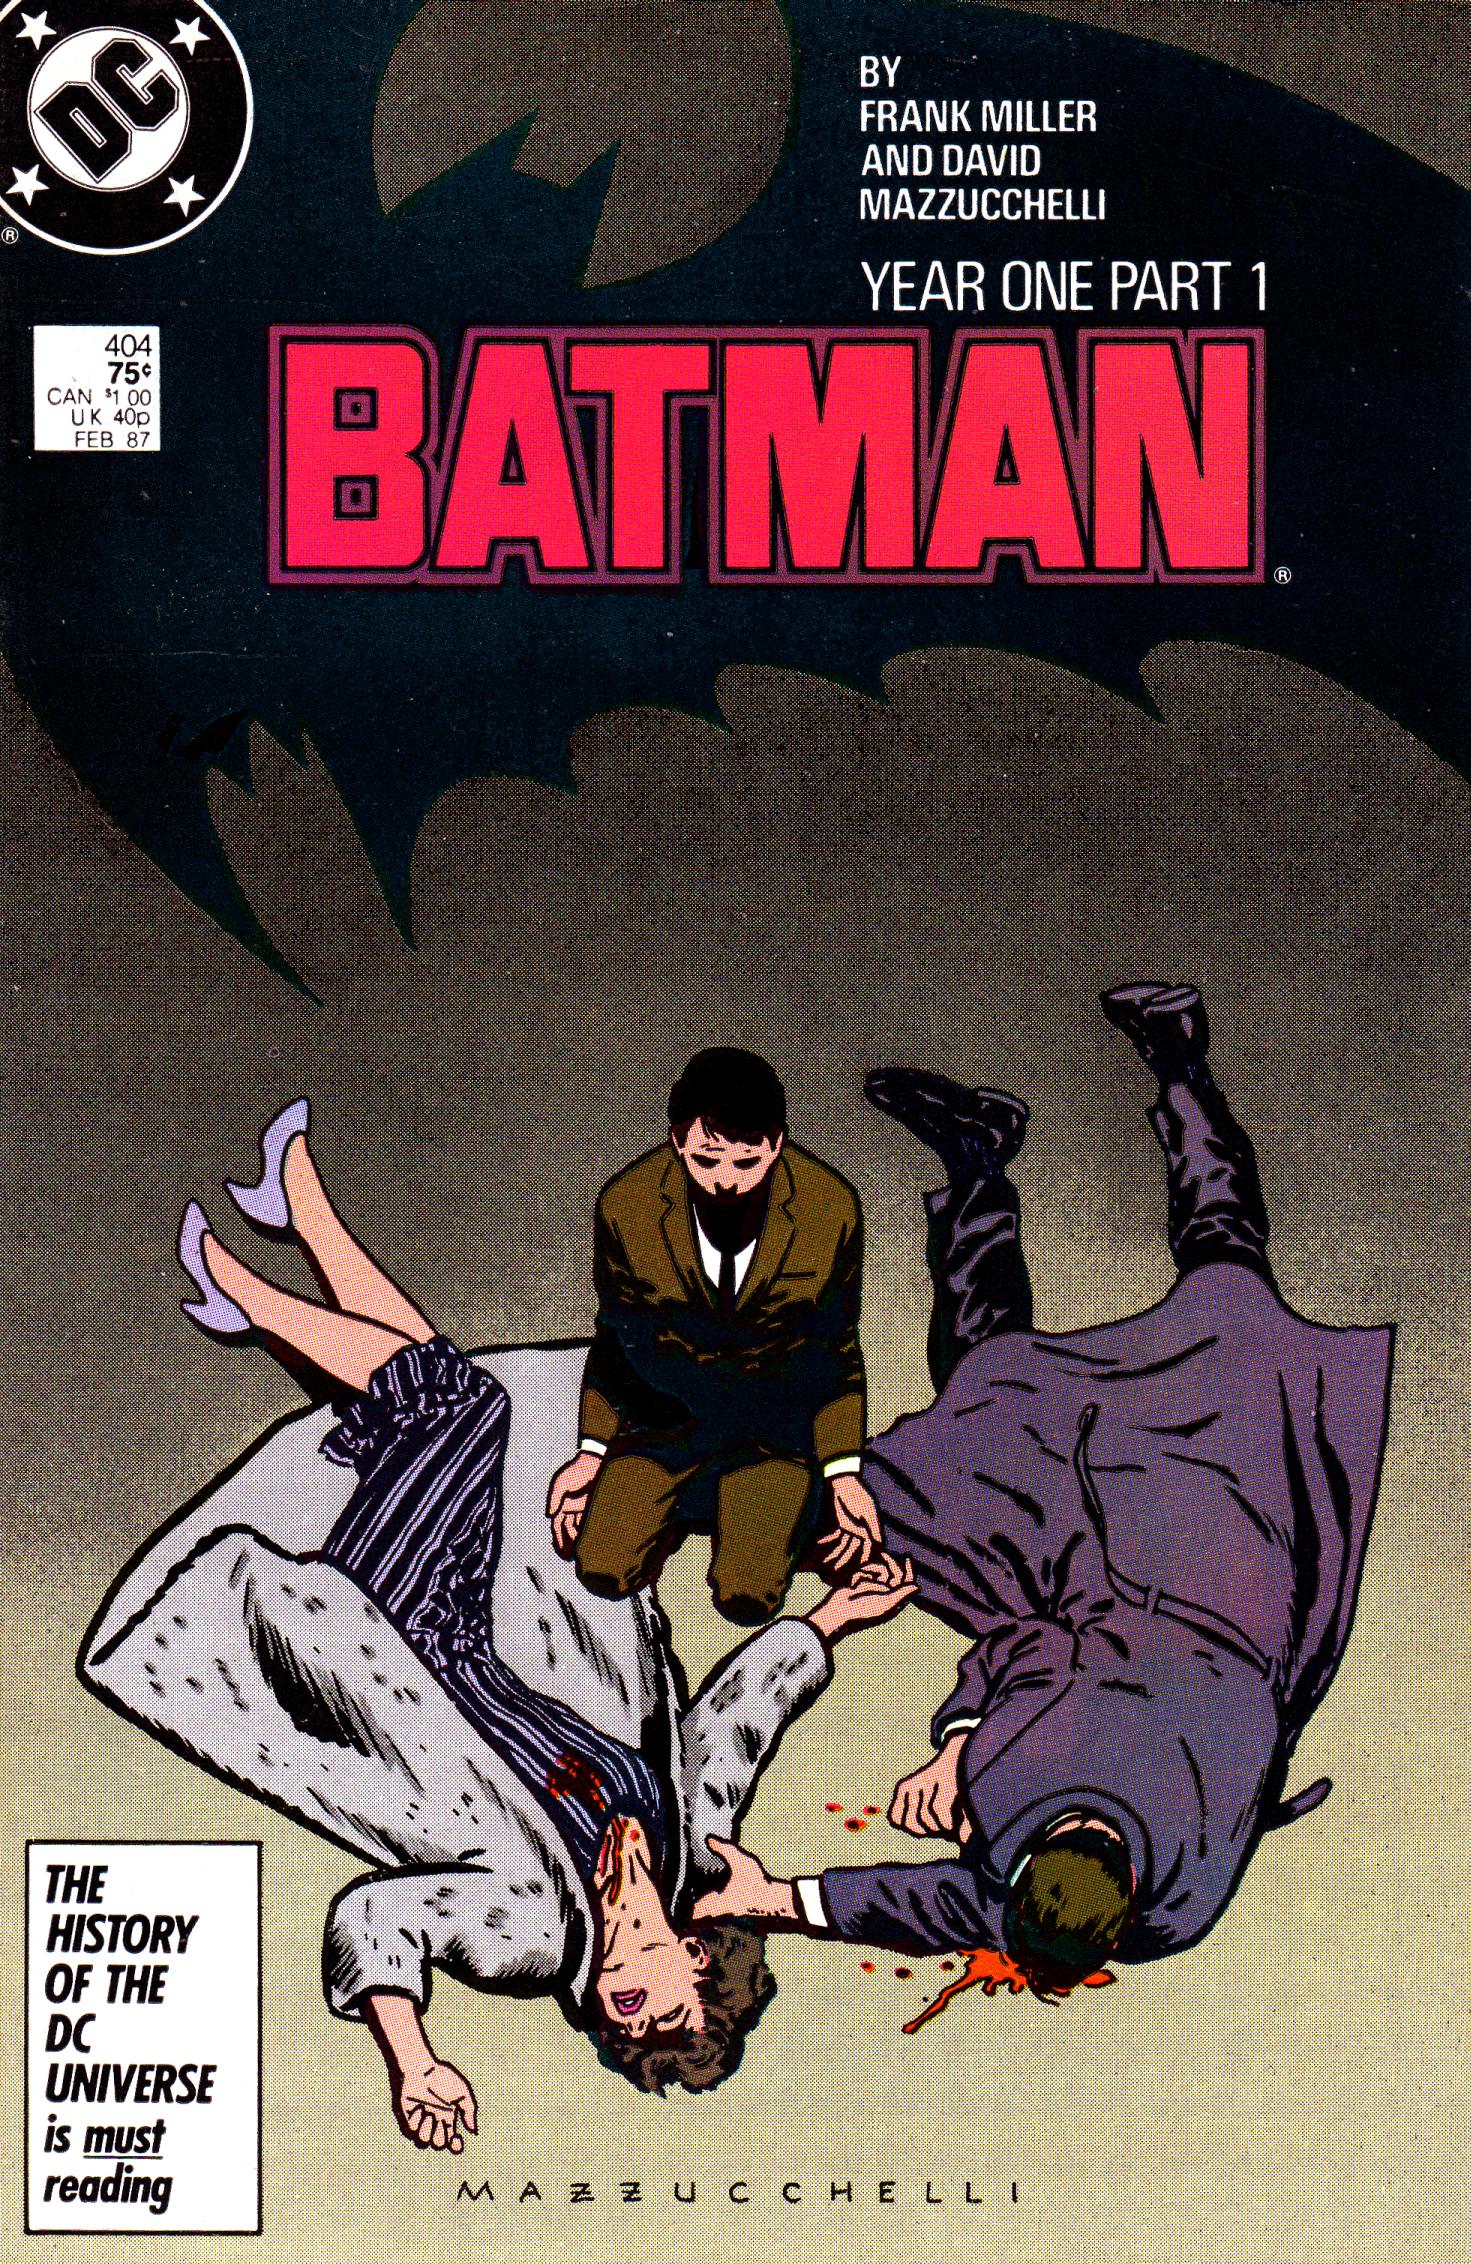 frank miller batman comics